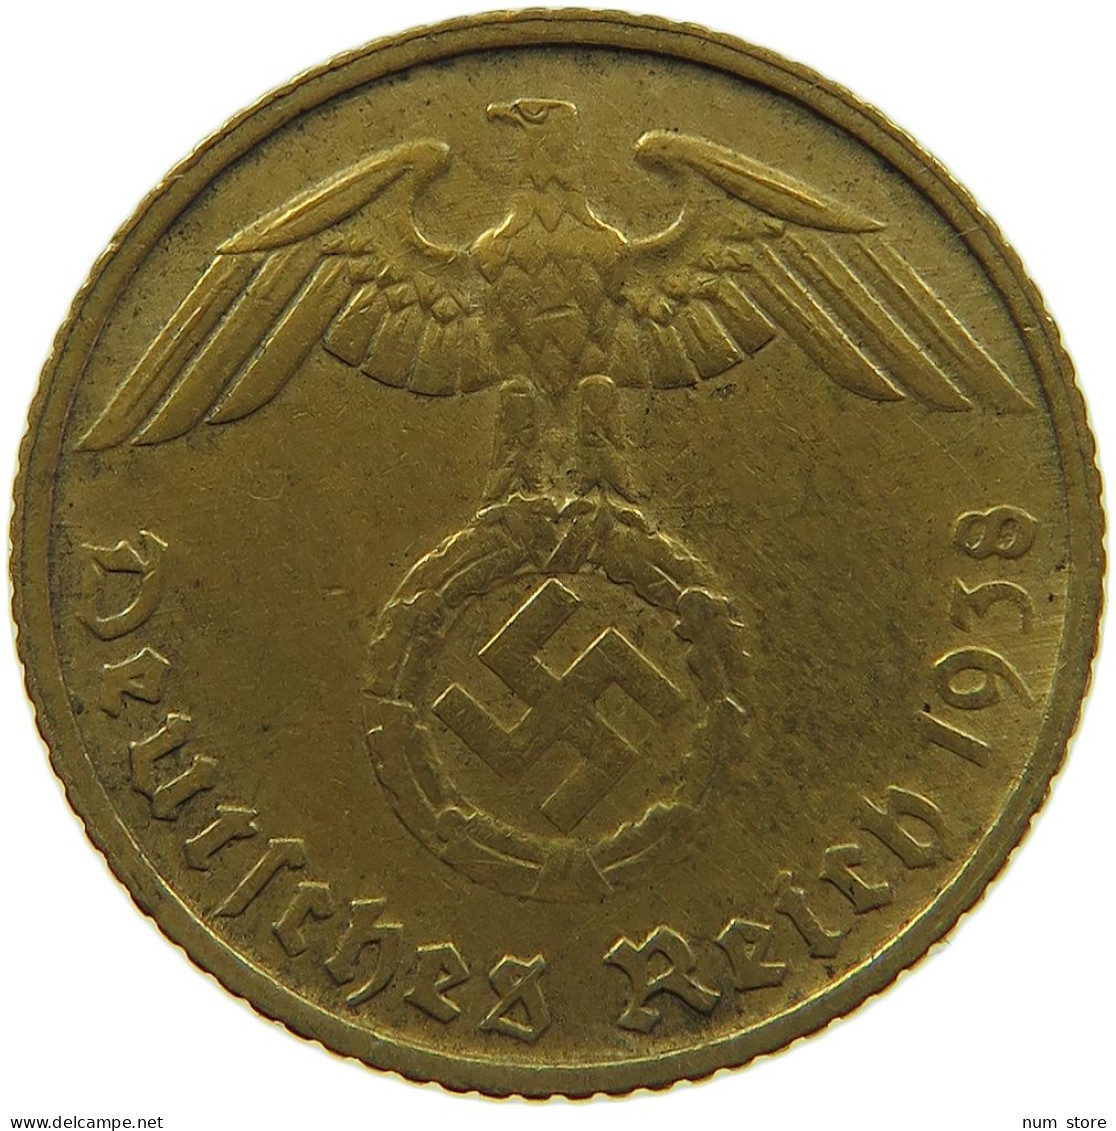 GERMANY 5 REICHSPFENNIG 1938 D #s091 0705 - 5 Reichspfennig